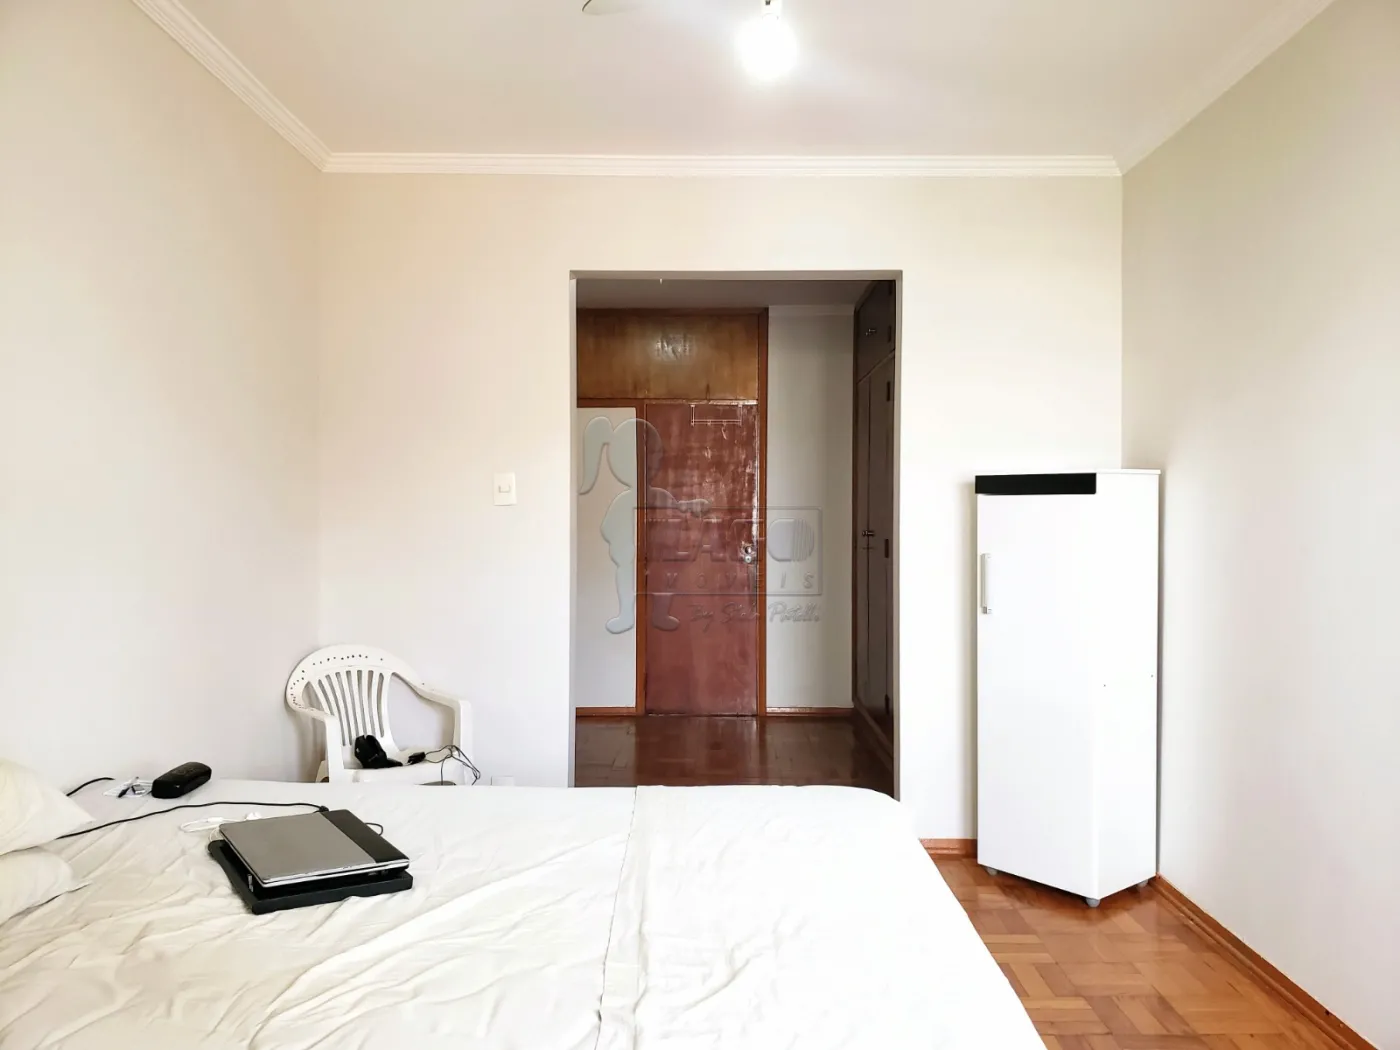 Comprar Apartamentos / Padrão em Ribeirão Preto R$ 325.000,00 - Foto 12